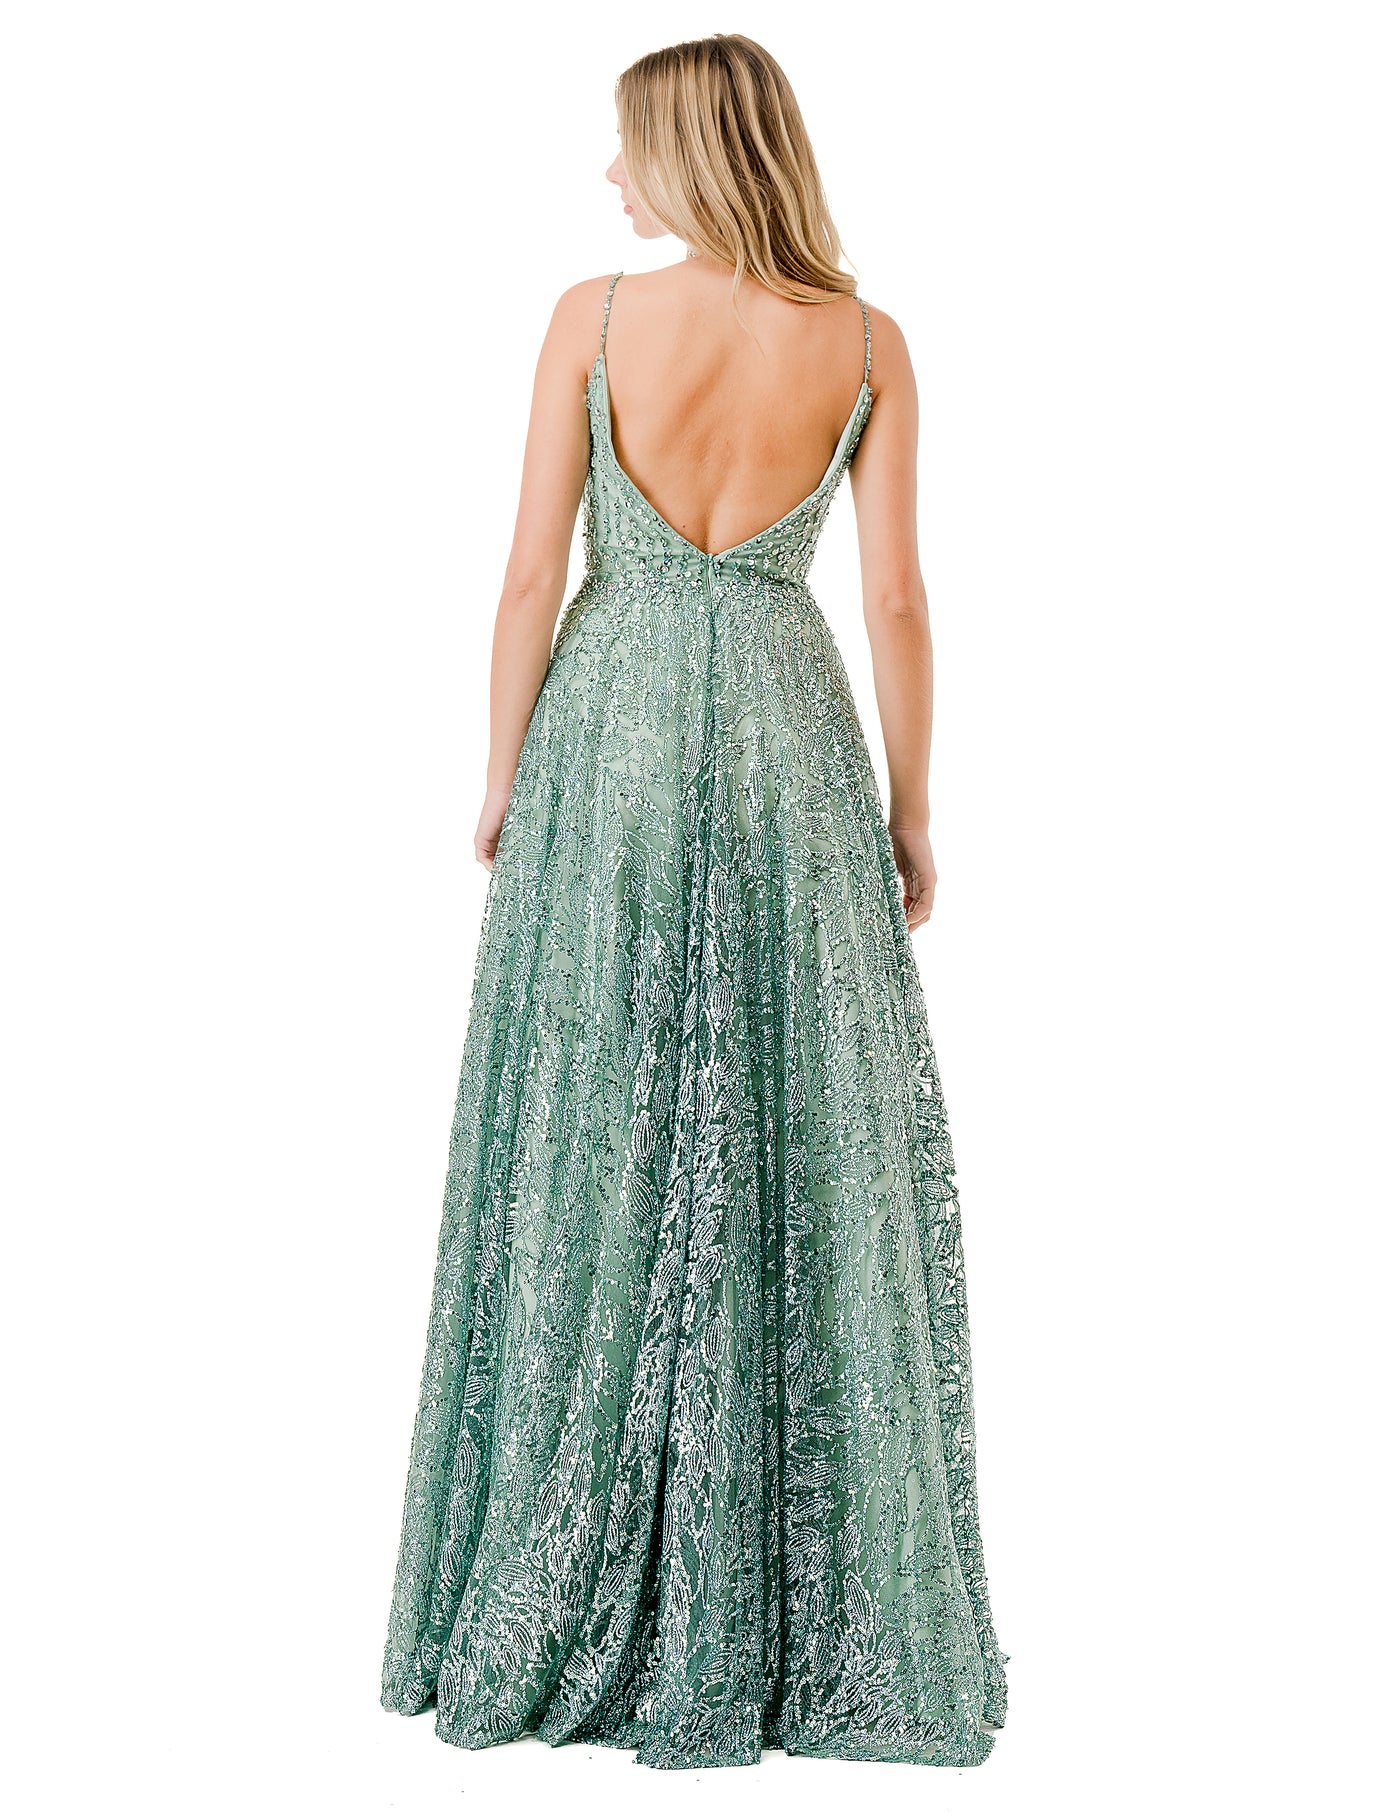 Aspeed Design L2672 - A-Line Prom Dress